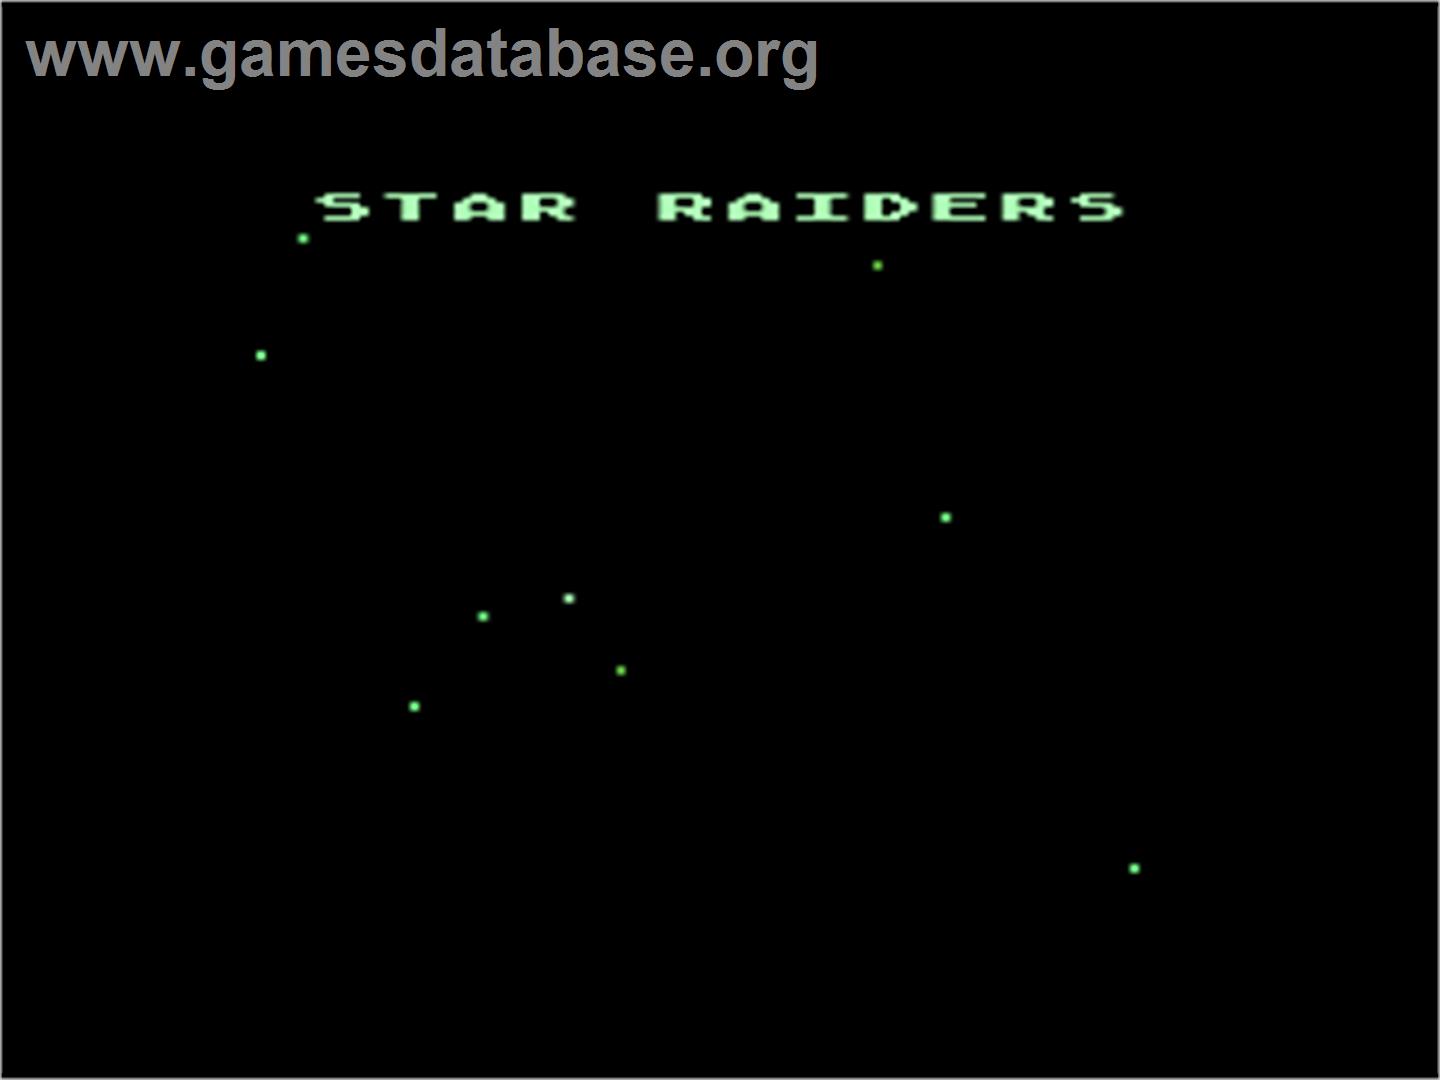 Star Raiders - Atari 8-bit - Artwork - Title Screen